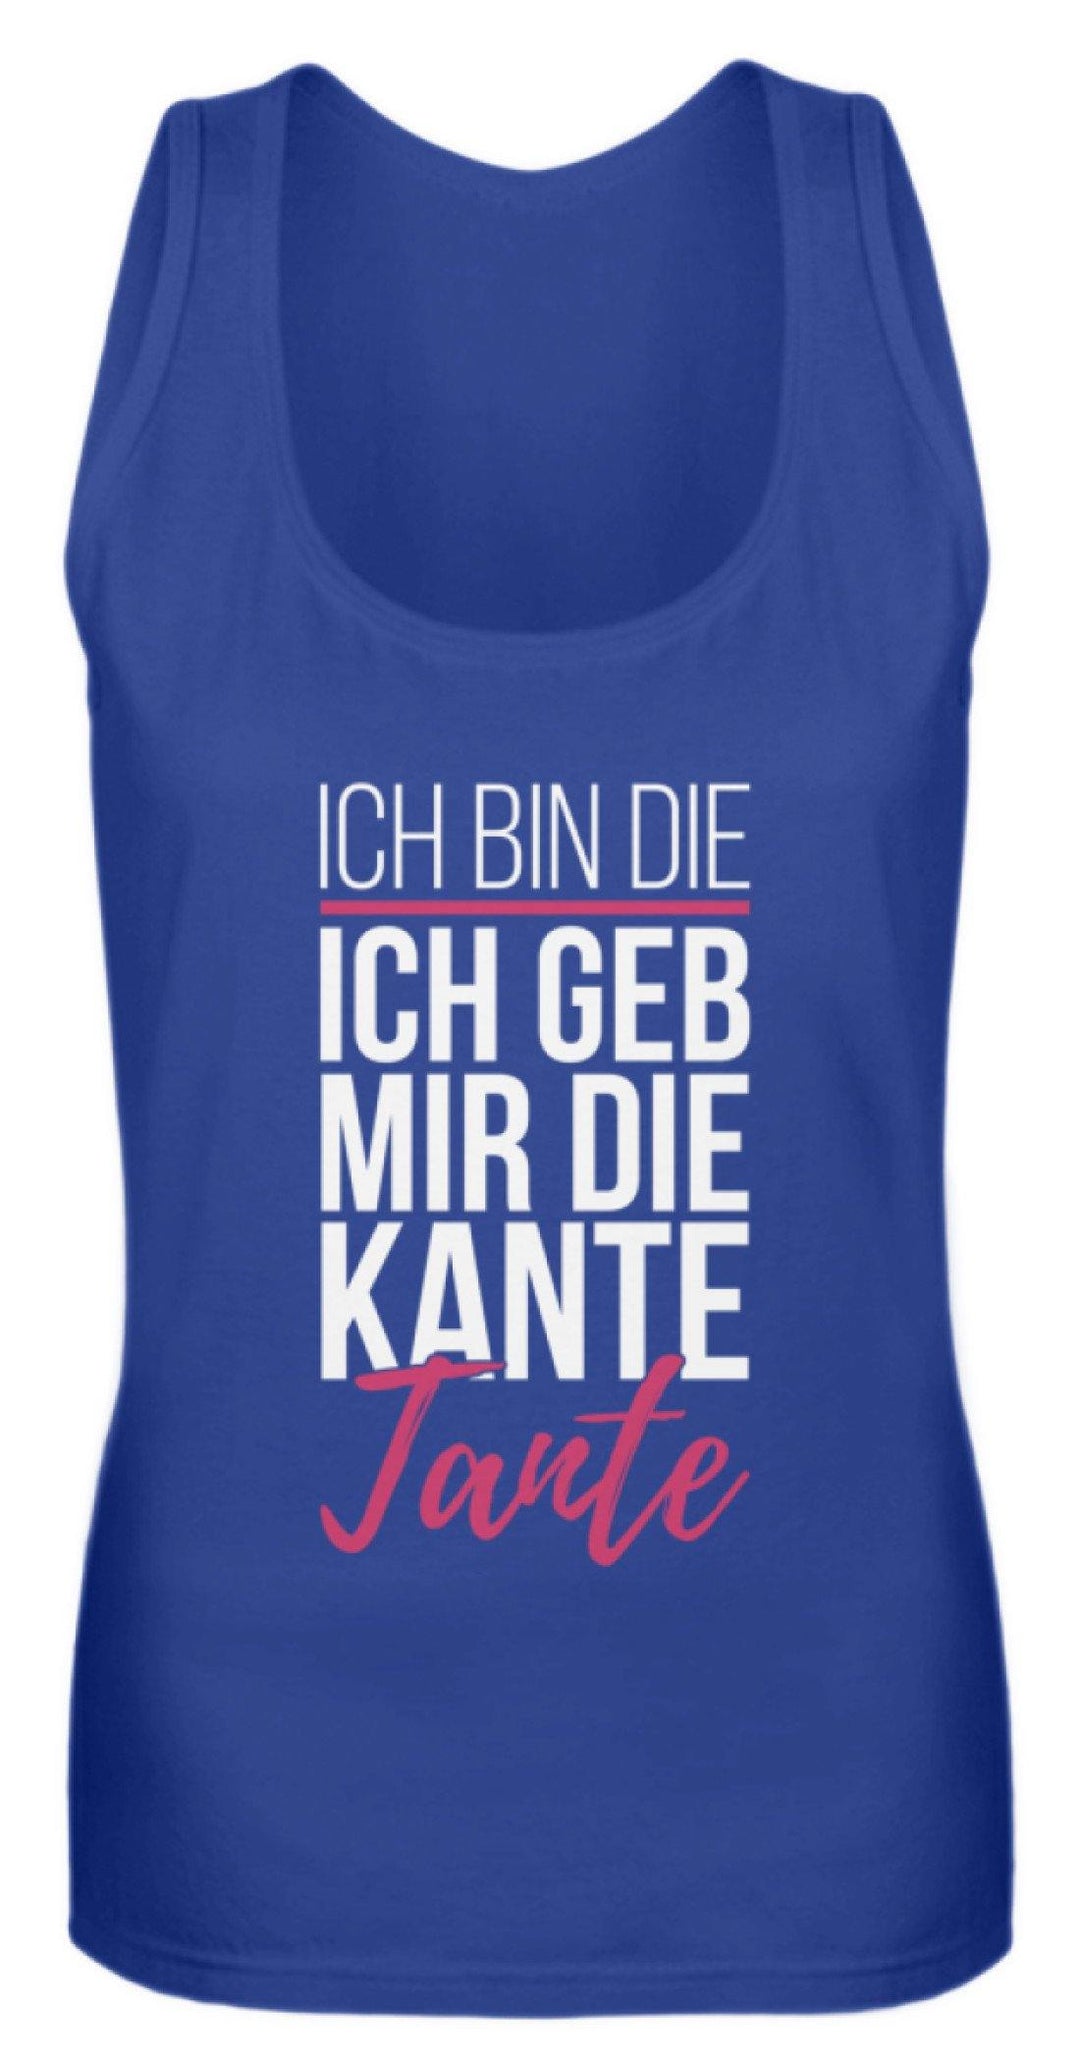 Kante Tante - Words on Shirts  - Frauen Tanktop - Words on Shirts Sag es mit dem Mittelfinger Shirts Hoodies Sweatshirt Taschen Gymsack Spruch Sprüche Statement